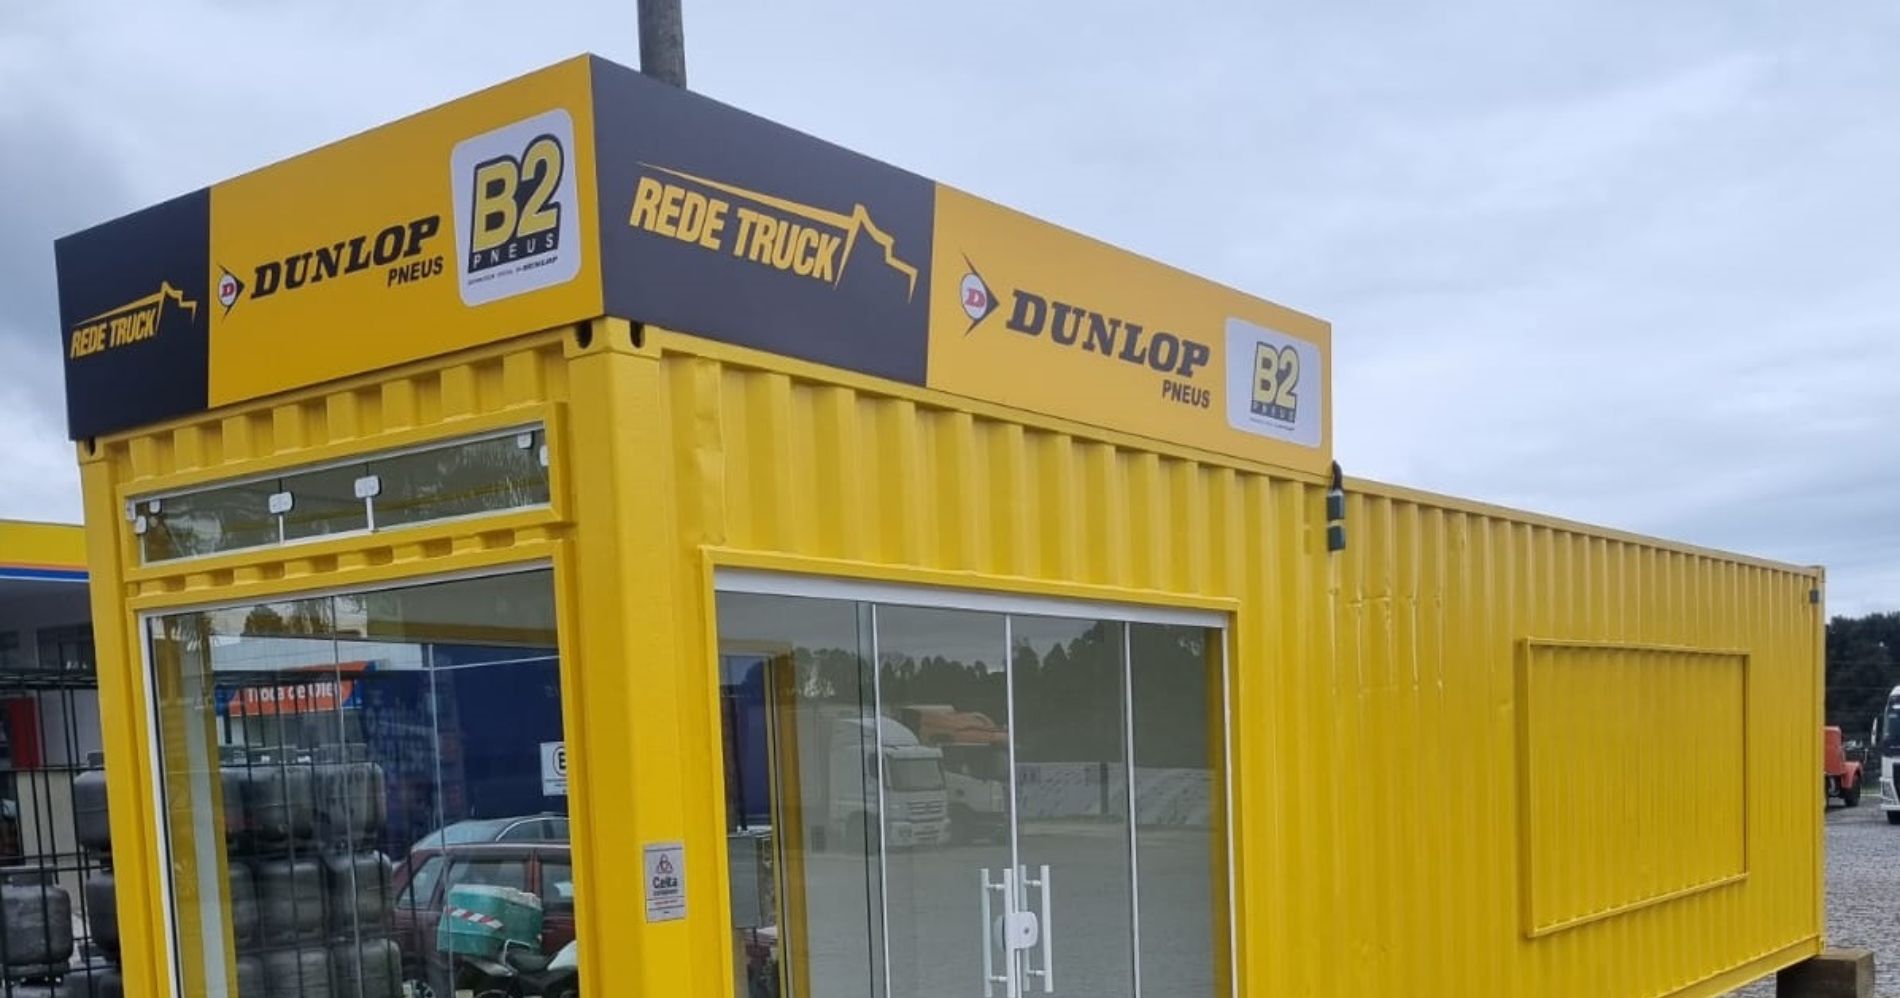 Dunlop Pneus prepara container de vendas em Quatro Barras